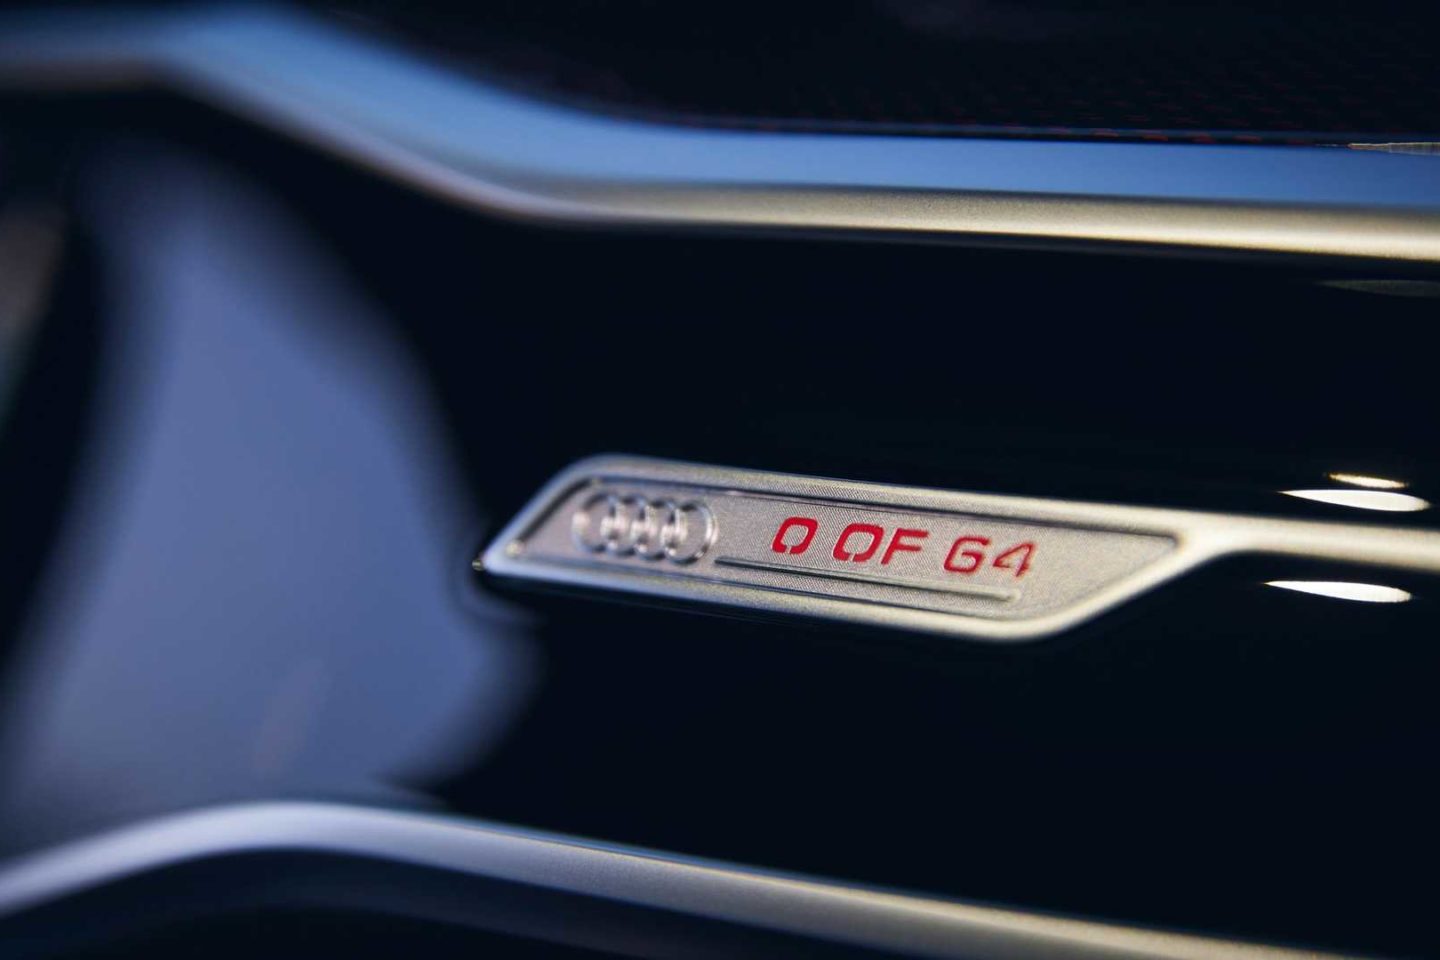 Audi RS 6 Avant Johann Abt Signature Edition